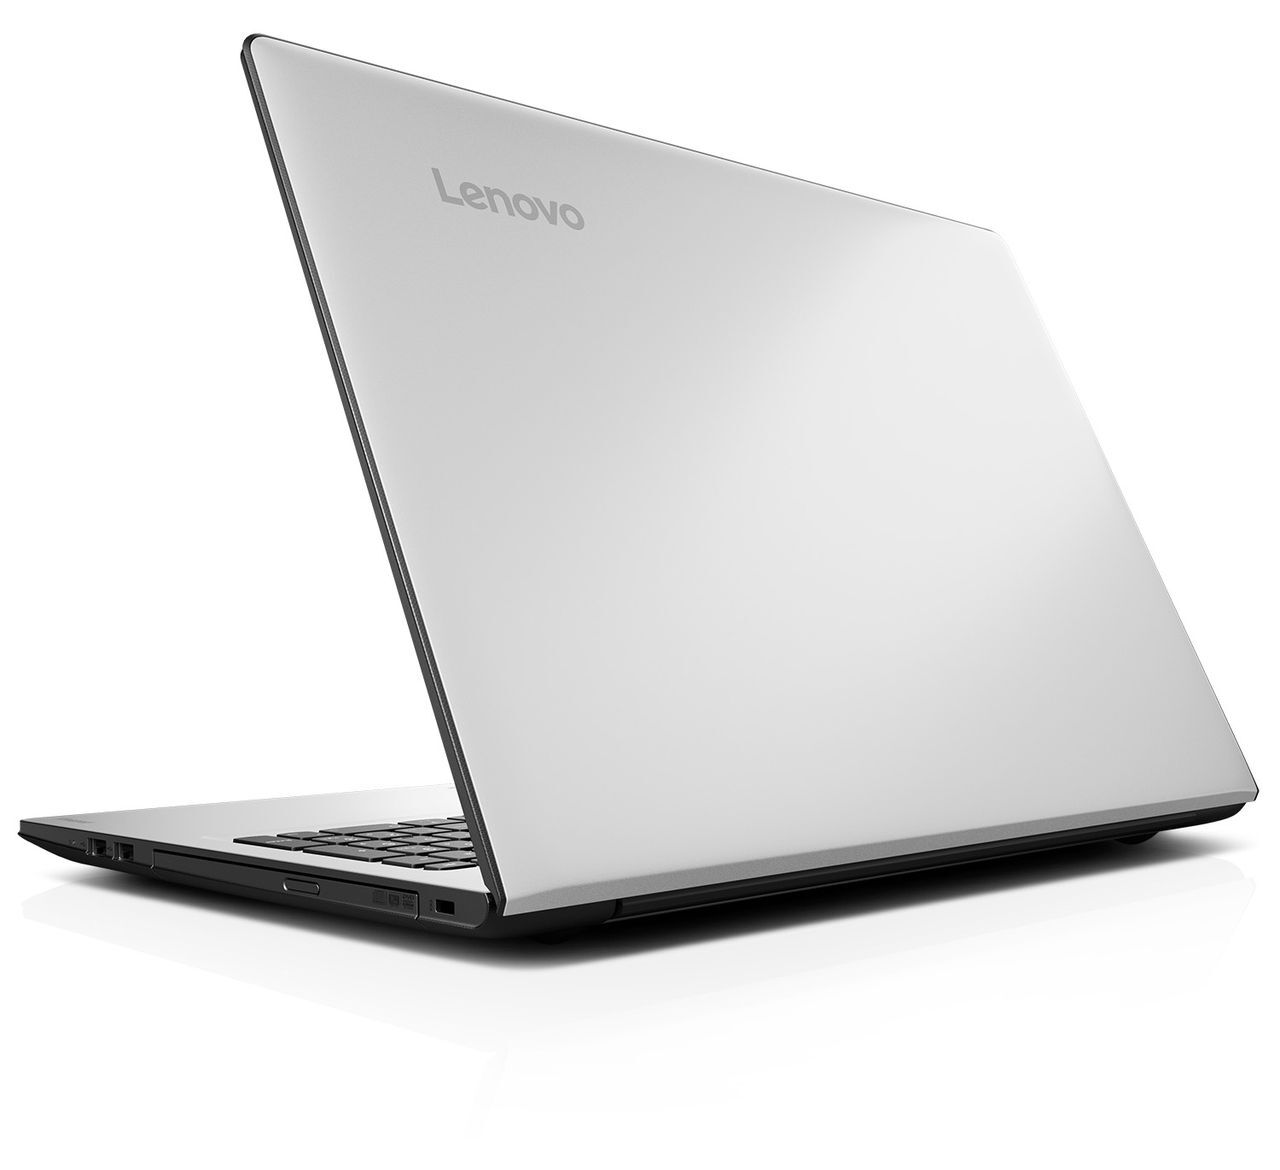 Laptop Lenovo Ideapad 310 14ISK 80SL006AVN - Intel i5 6200U, RAM 4GB, 1TB HDD, VGA, 14inches